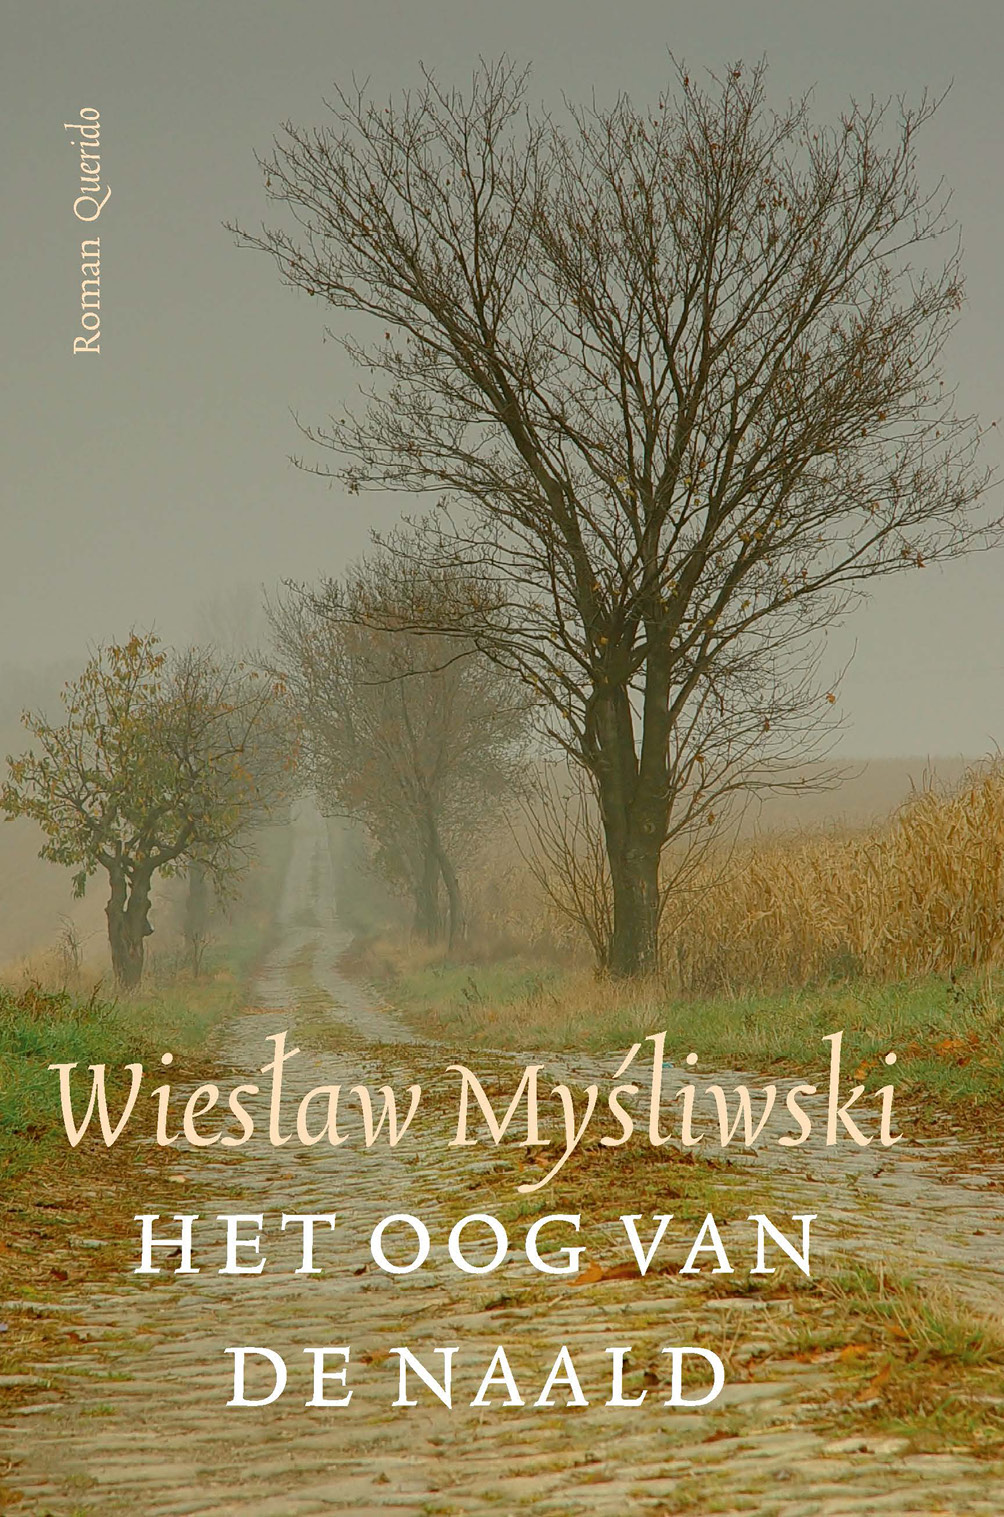 Mysliwski, Wieslaw - Het oog van de naald